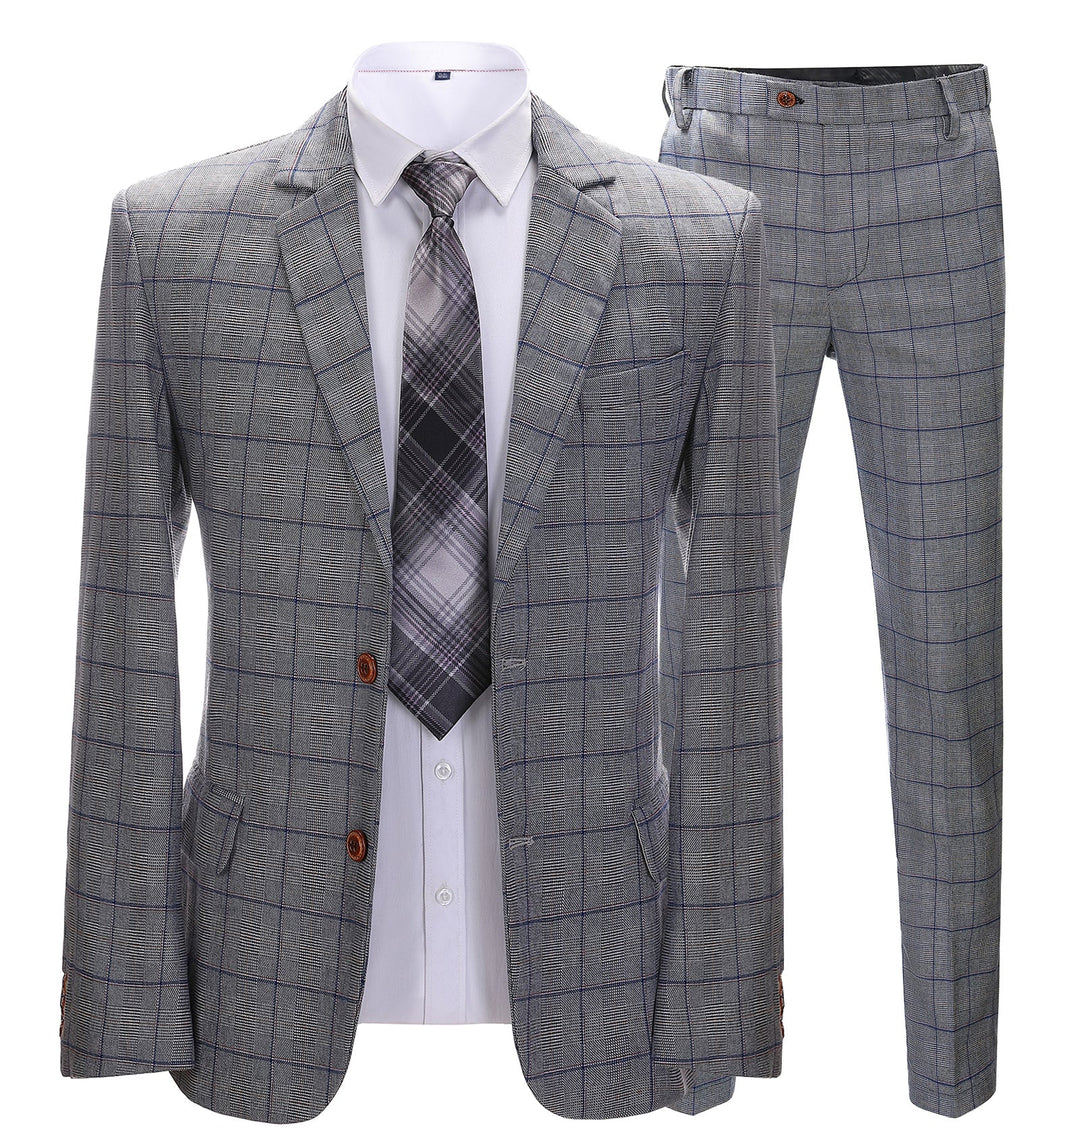 Mens Suit Business 2 Pieces Formal Grey Plaid Notch Lapel Tuxedos for Wedding (Blazer+Pants) mens event wear